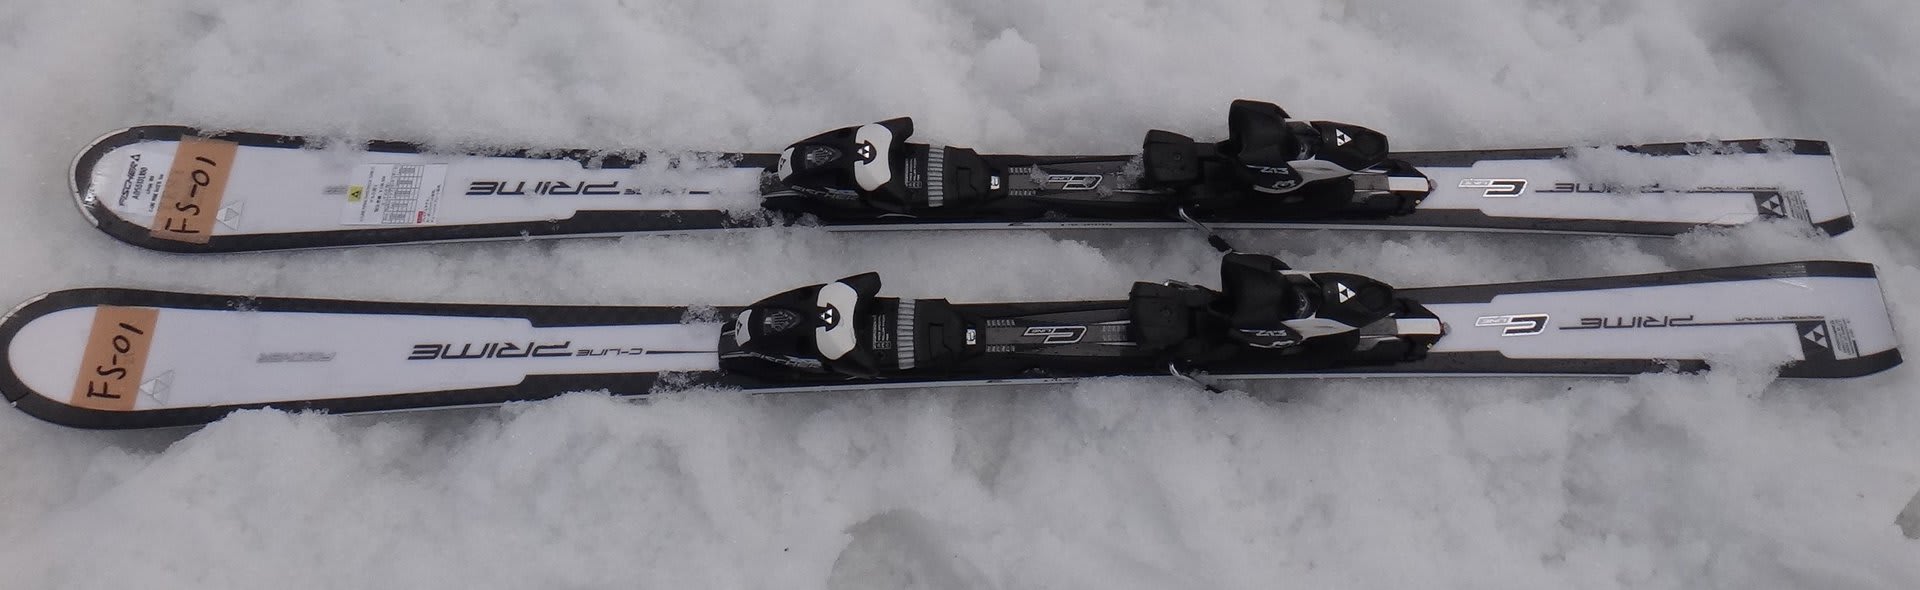 2014シーズンモデルのスキー試乗レポートその13…FISCHER編 - 徒然スキーヤー日記